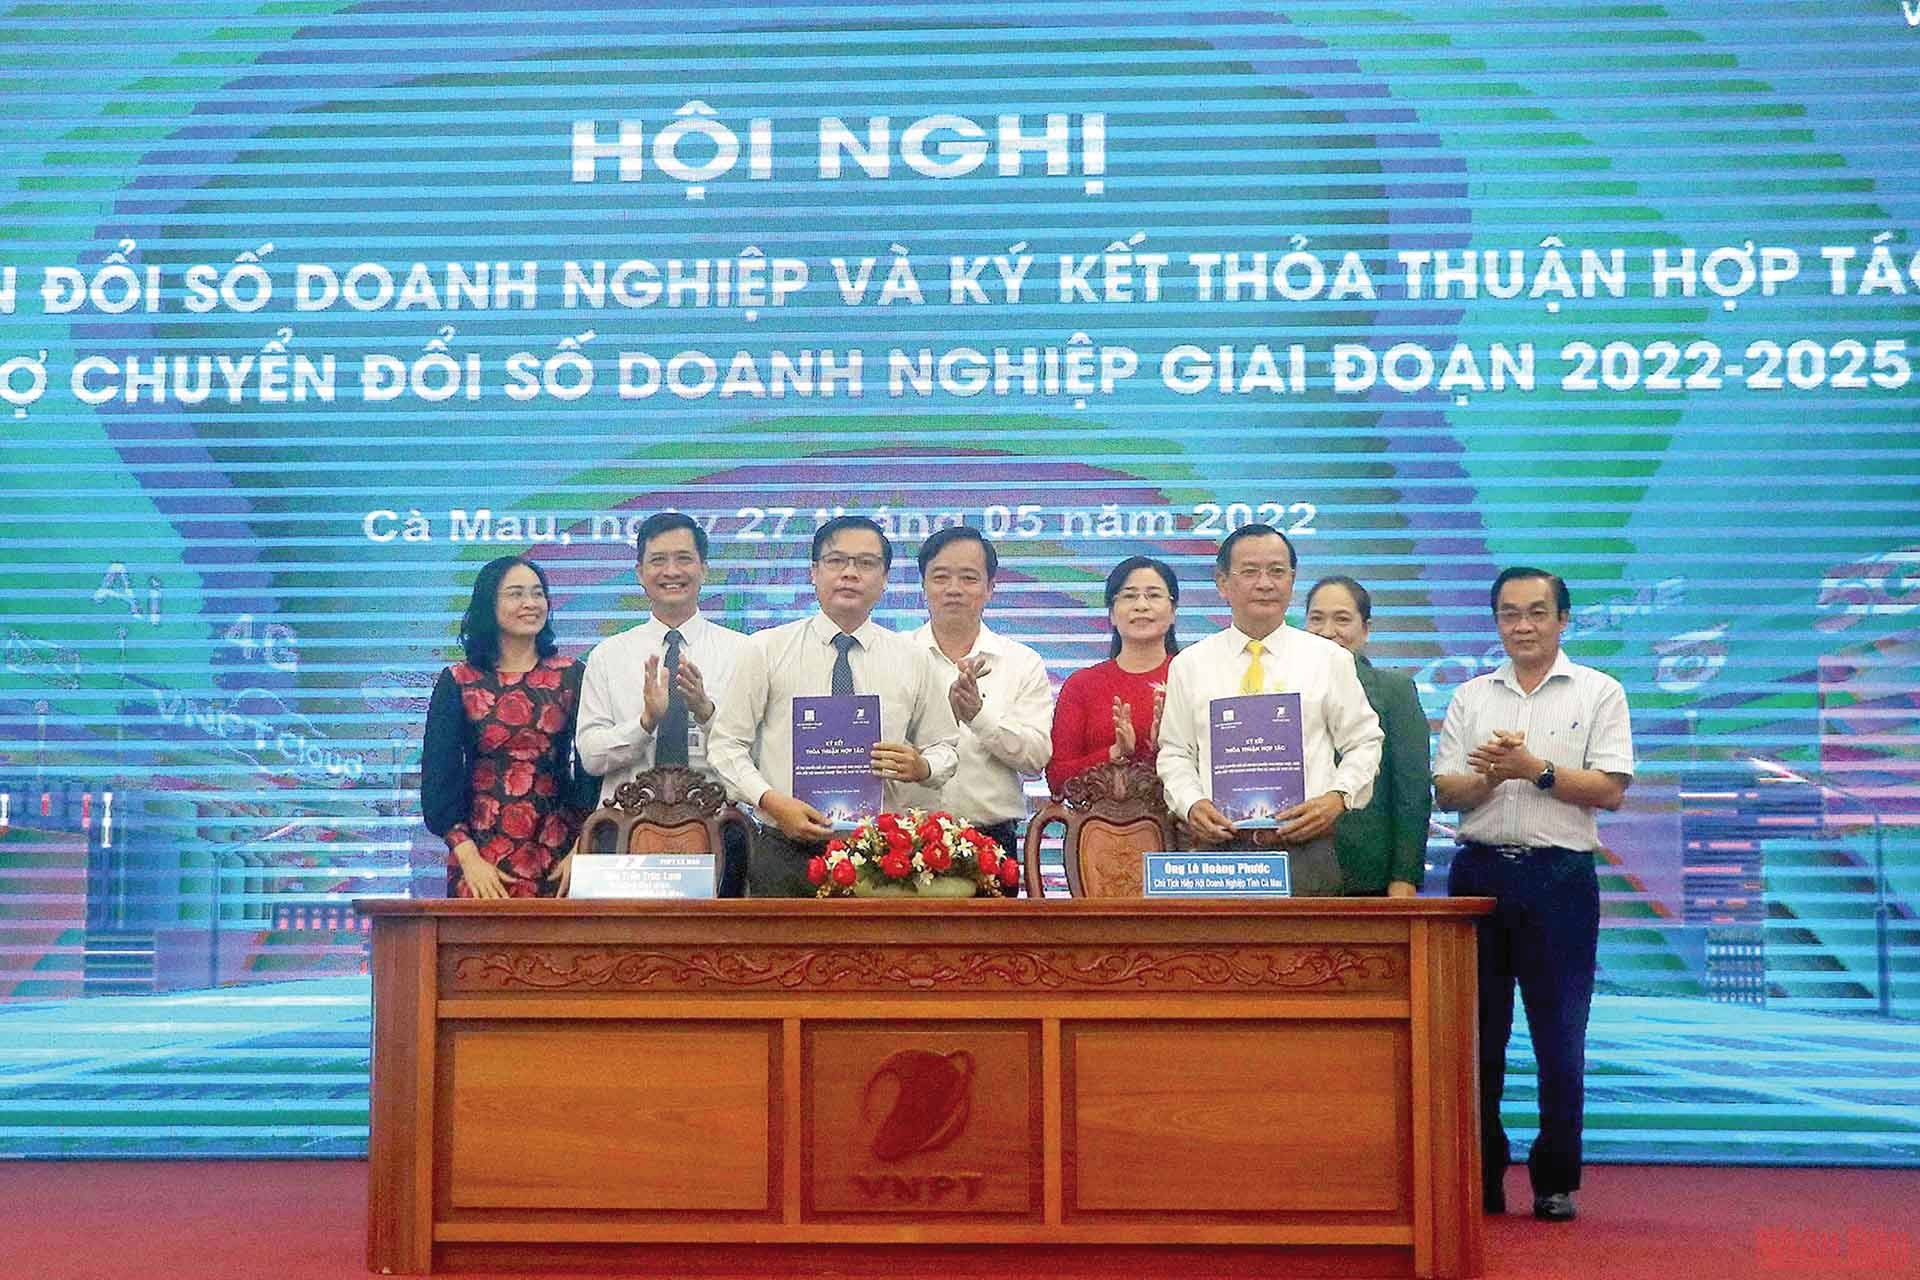 Phó Bí thư Tỉnh ủy, Chủ tịch UBND tỉnh Huỳnh Quốc Việt dự Lễ ký kết thỏa thuận hợp tác hỗ trợ chuyển đổi số doanh nghiệp giai đoạn 2022 -2025.